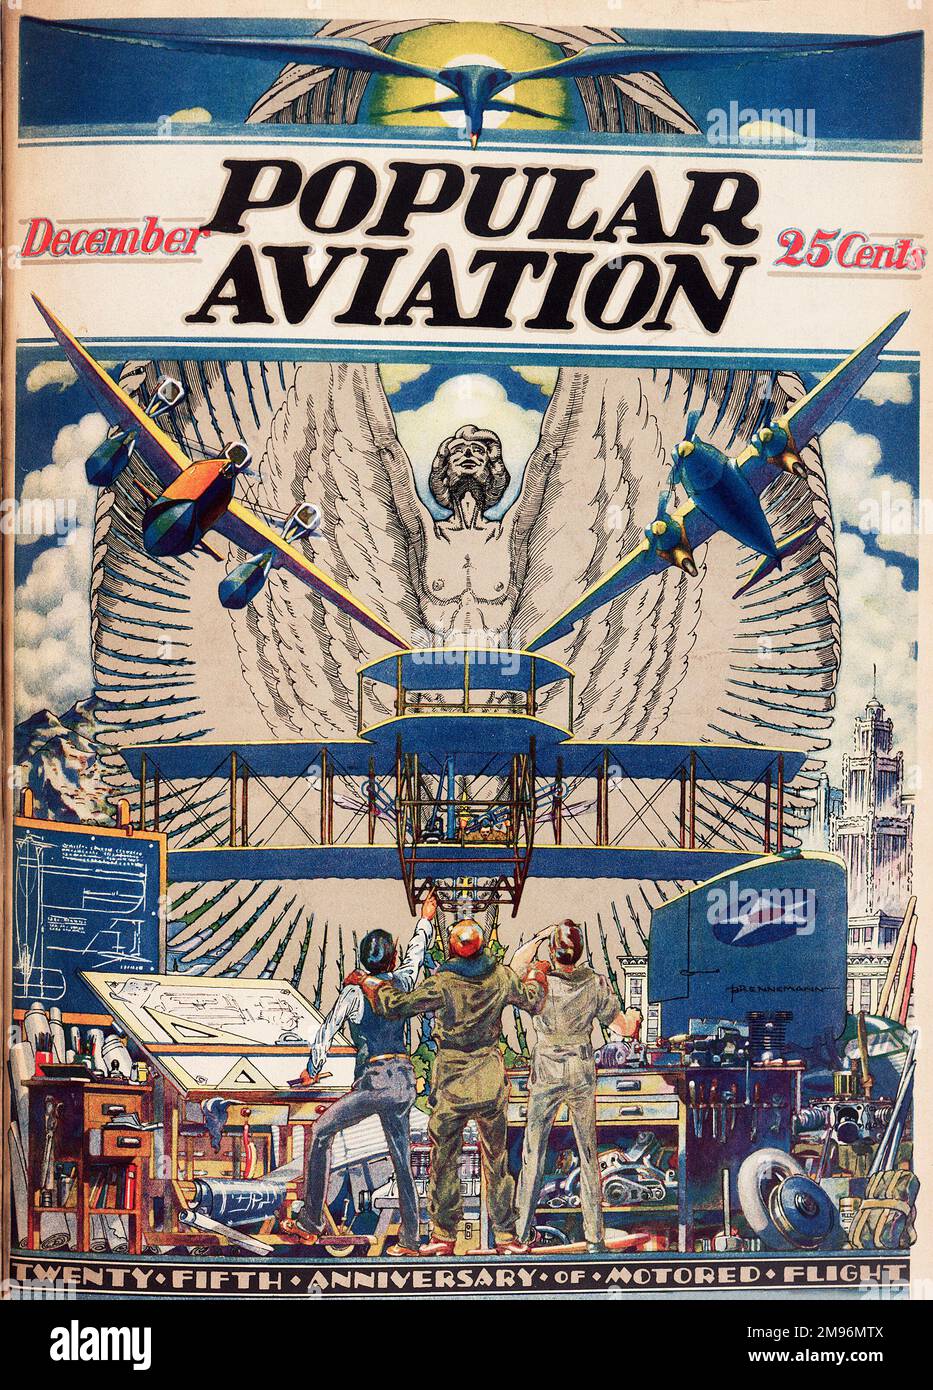 Coverdesign, Popular Aviation Magazine, zeigt drei Zeichner mit ihren Designs, die in Staunen über ihre Erfindungen blicken, um dem 25. Jahrestag des motorisierten Fluges zu gedenken. Stockfoto